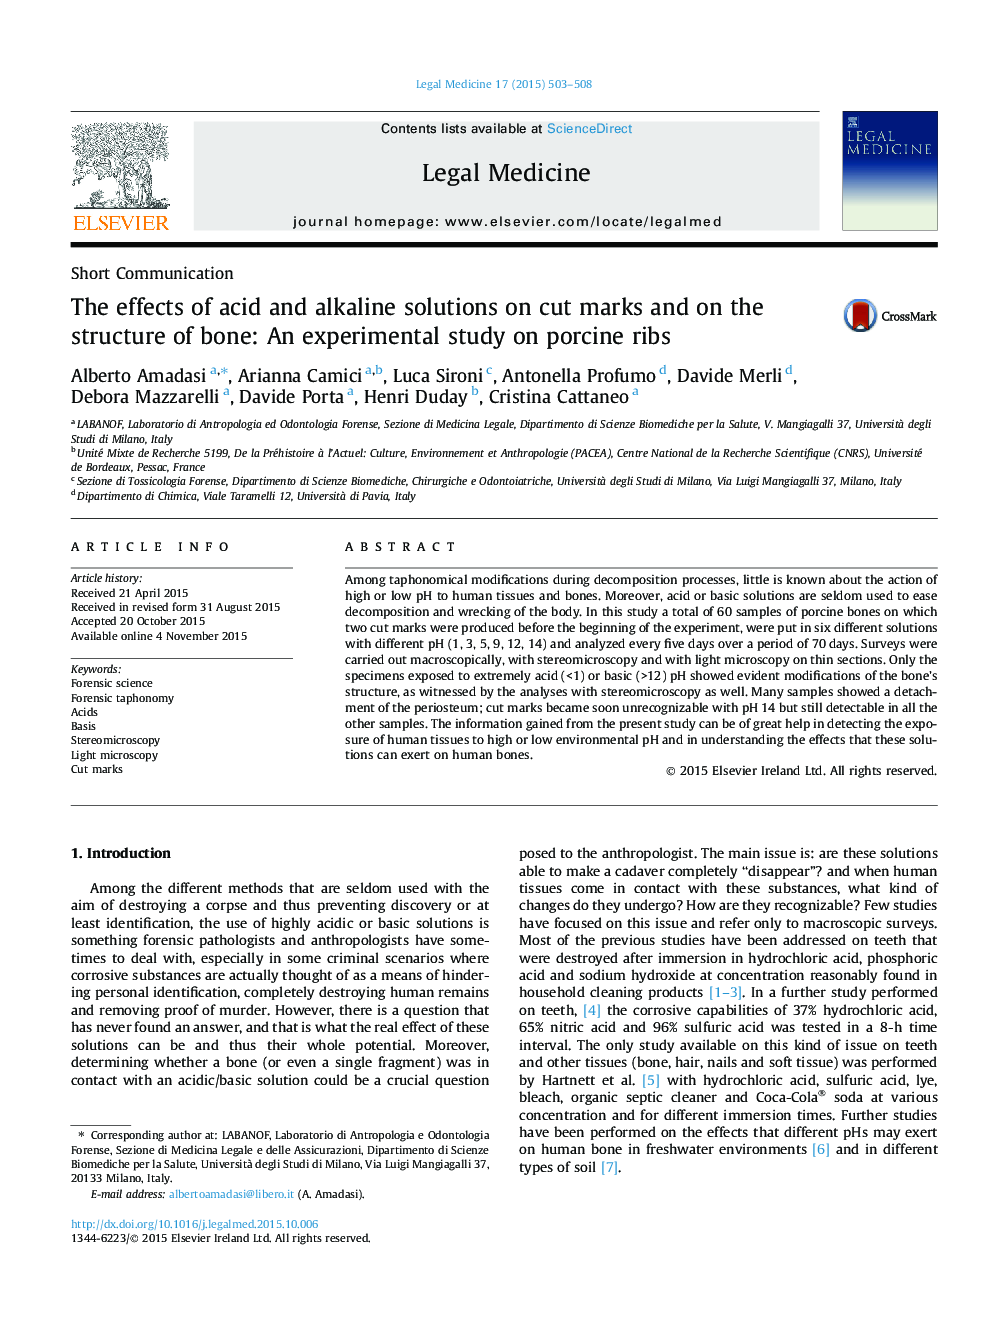 اثرات محلول اسید و قلیایی بر علائم برش و بر ساختار استخوان: یک مطالعه تجربی بر روی کمربند سوسیس